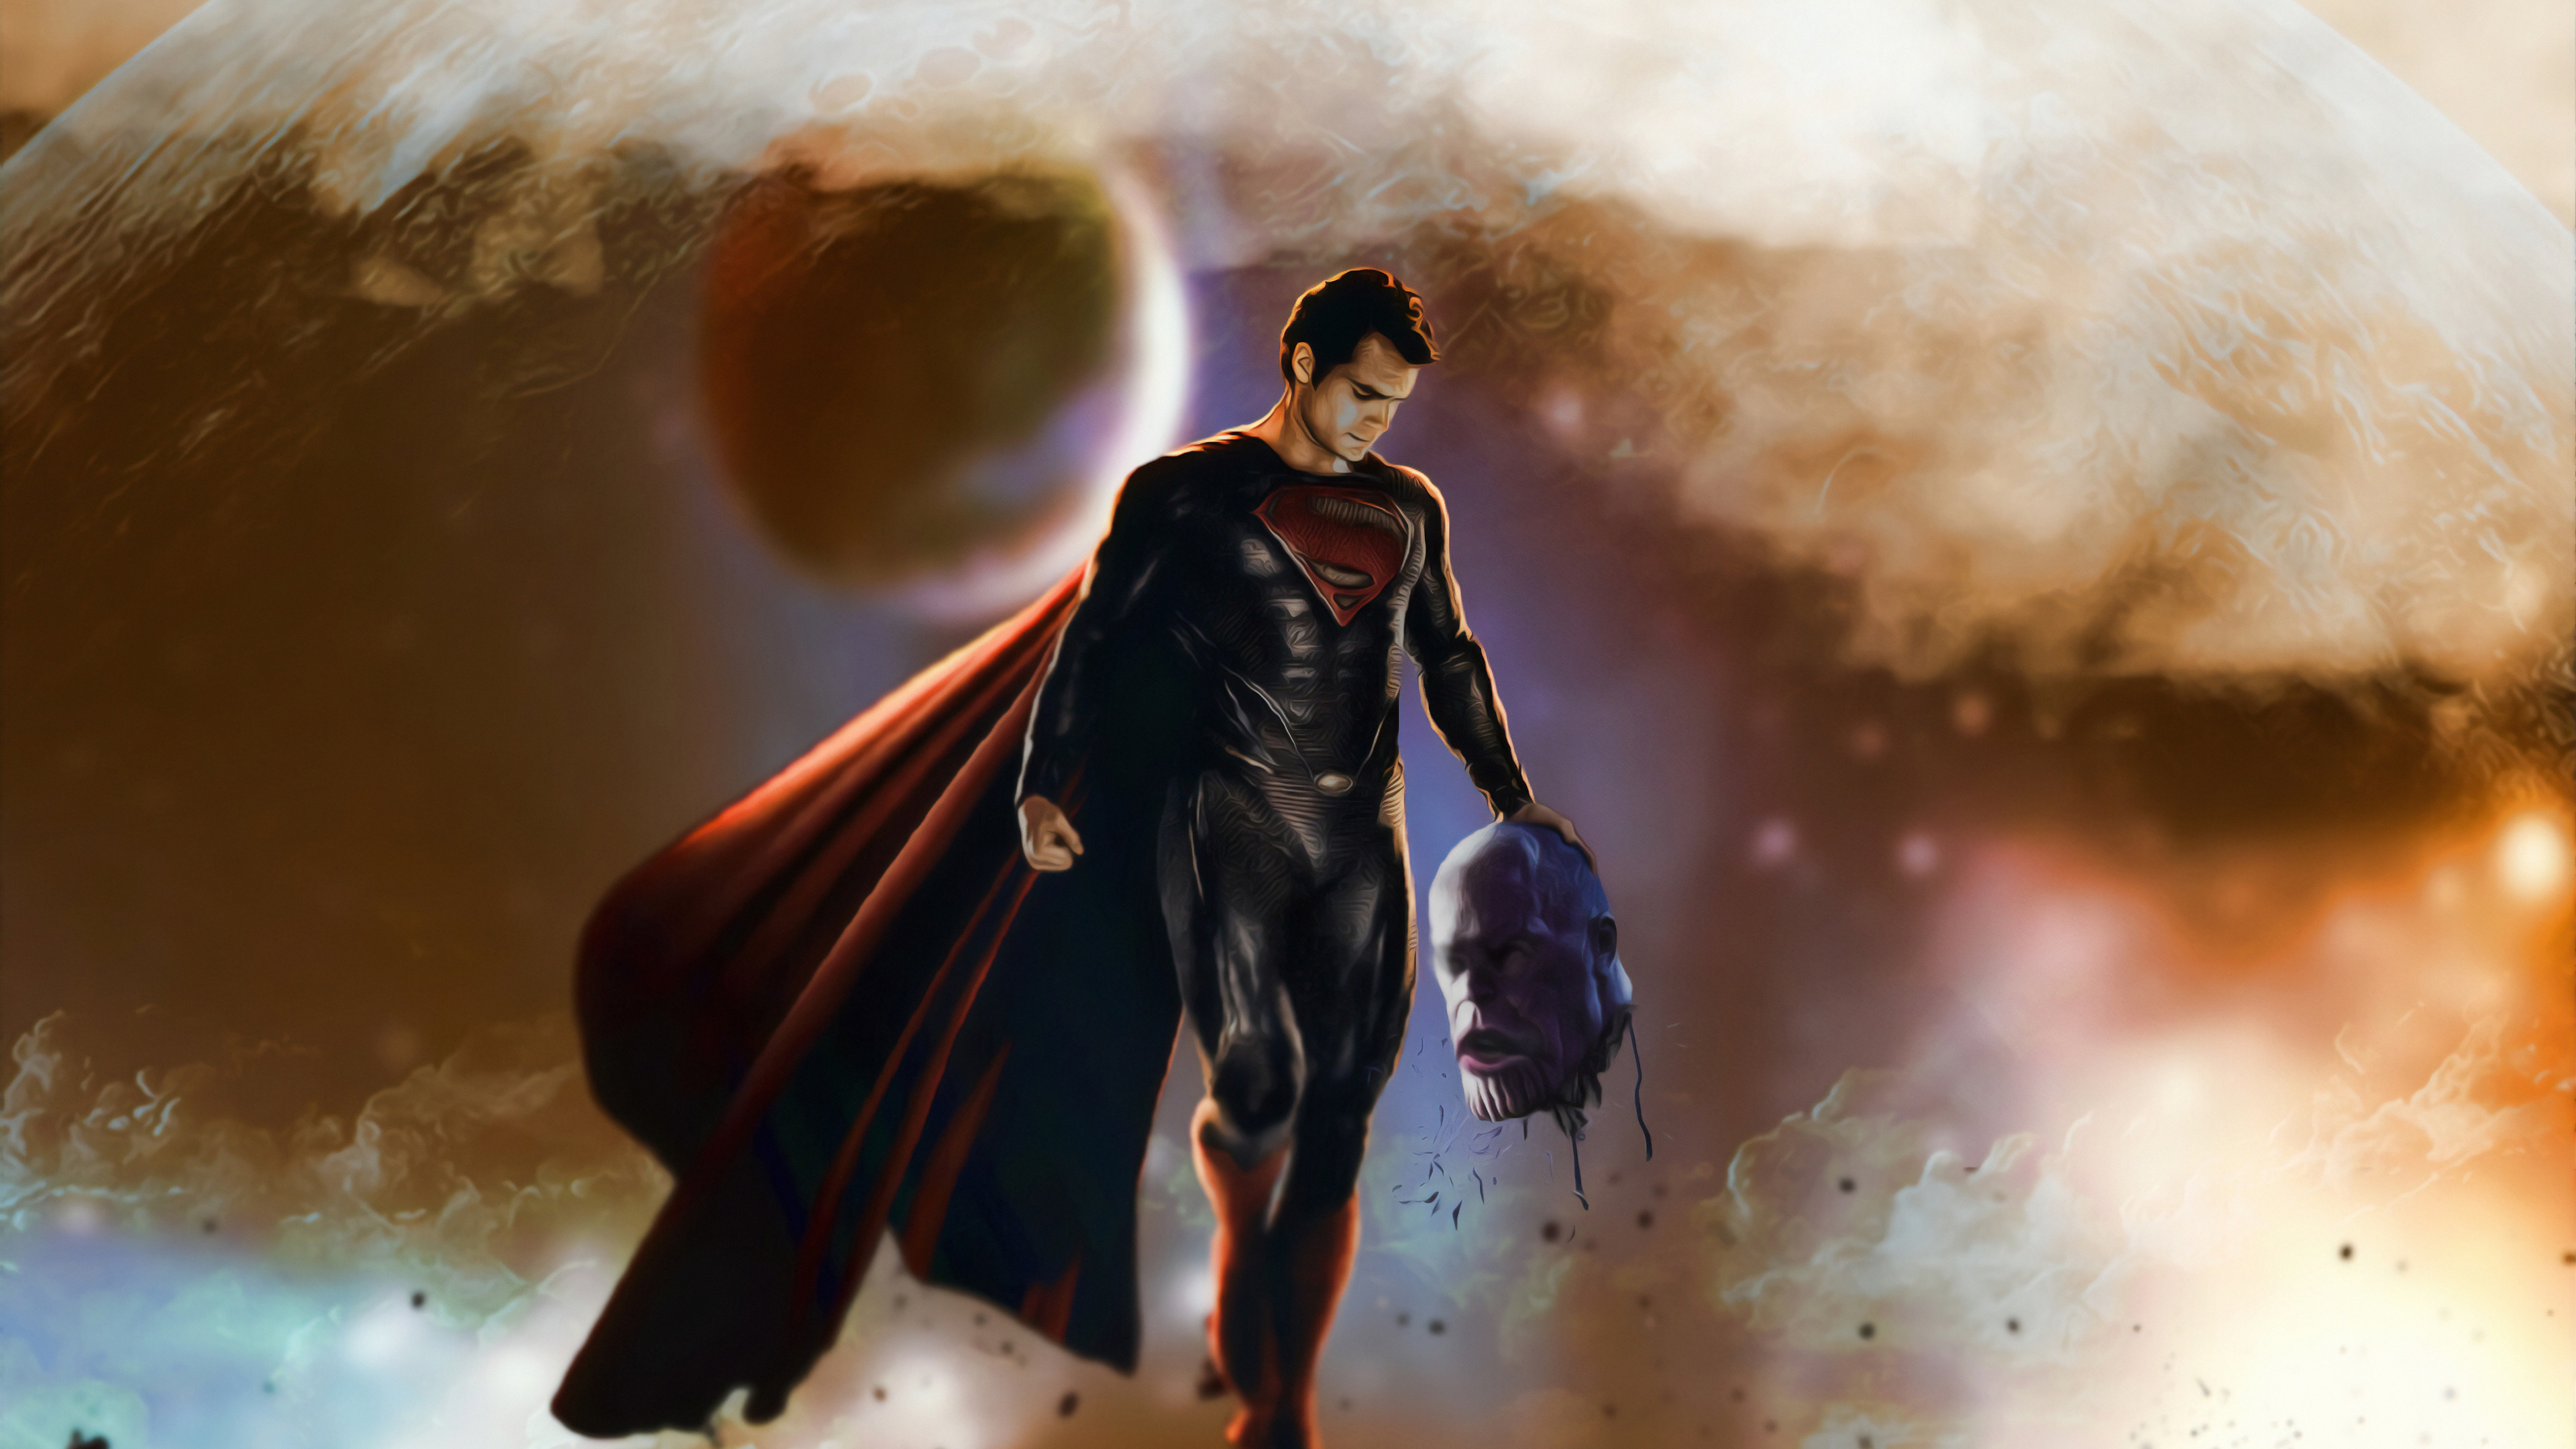 fondo de pantalla de superman,superhéroe,personaje de ficción,hombre murciélago,superhombre,cg artwork